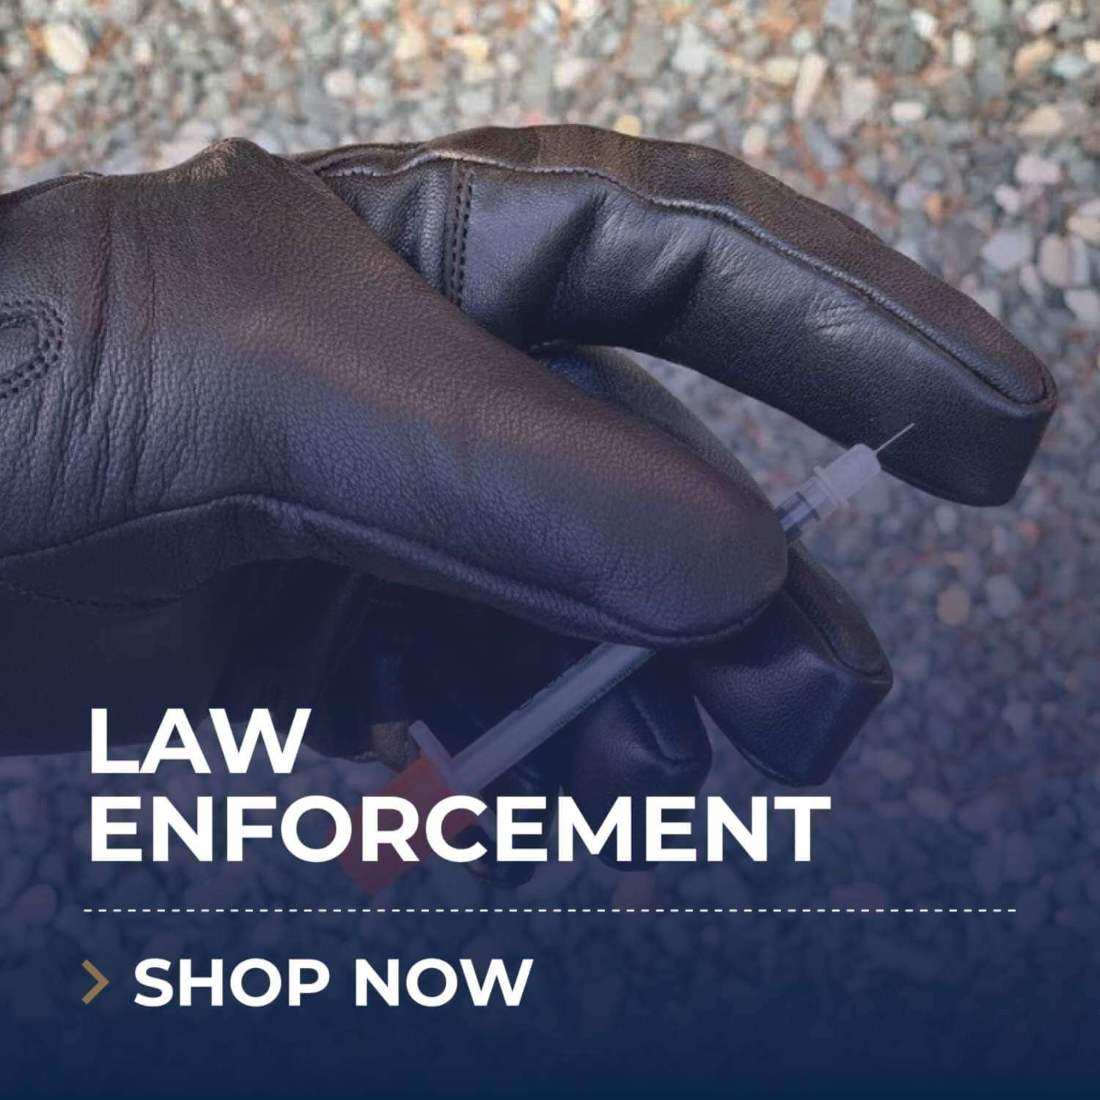 Law Enforcement - Shop Now